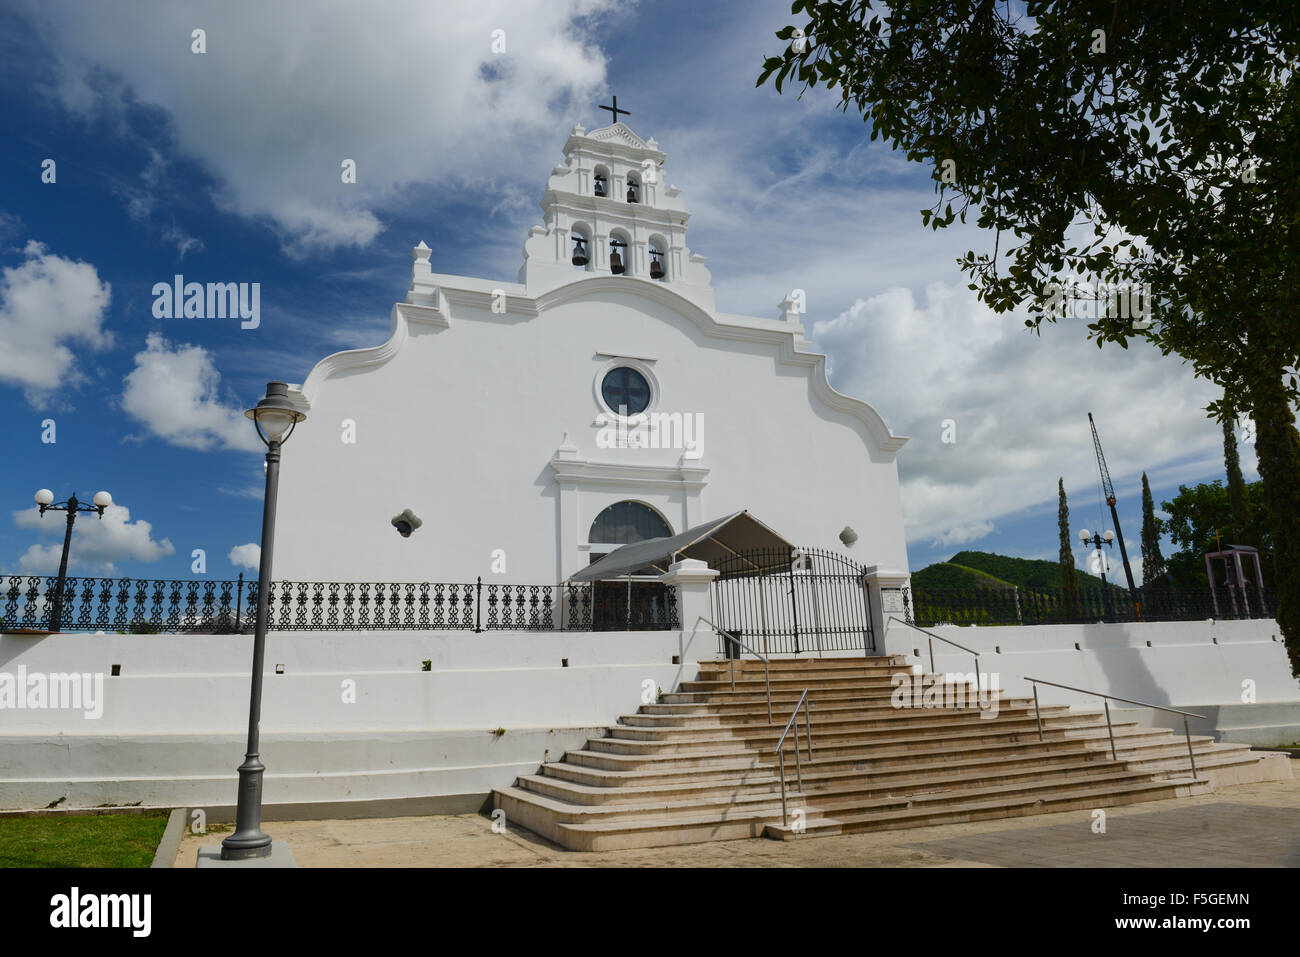 Church San Blas de Illescas is located in the center of town.  Coamo, Puerto Rico. Caribbean Island. USA territory. Stock Photo